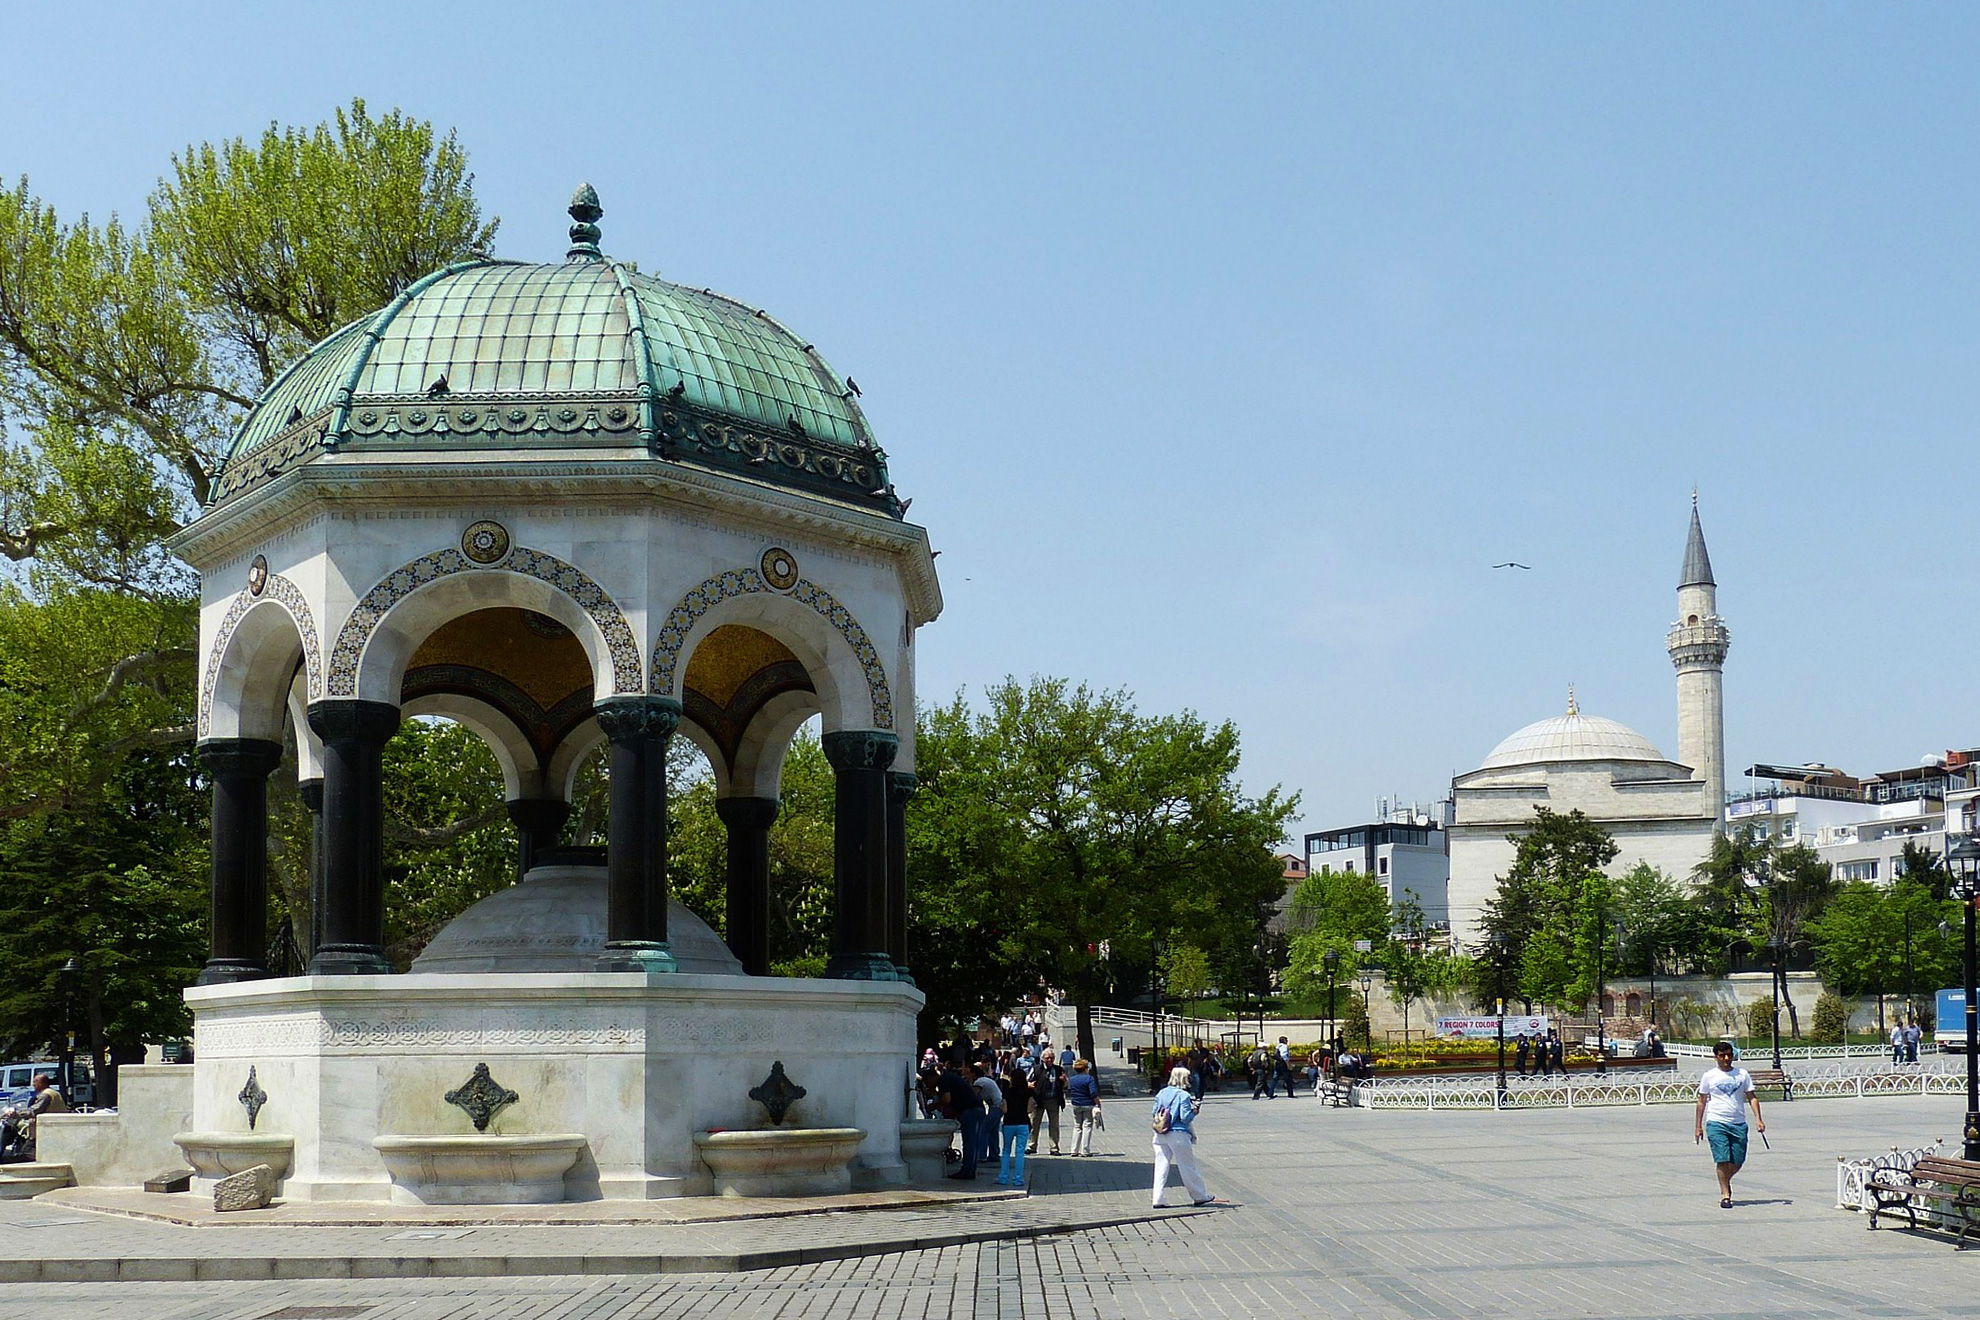 Фестивалът на лалето в Истанбул, 3 нощувки - Фонтана на Вилхелм II, Истанбул, Турция - The Fountain of Wilhelm II, Istanbul, Turkey